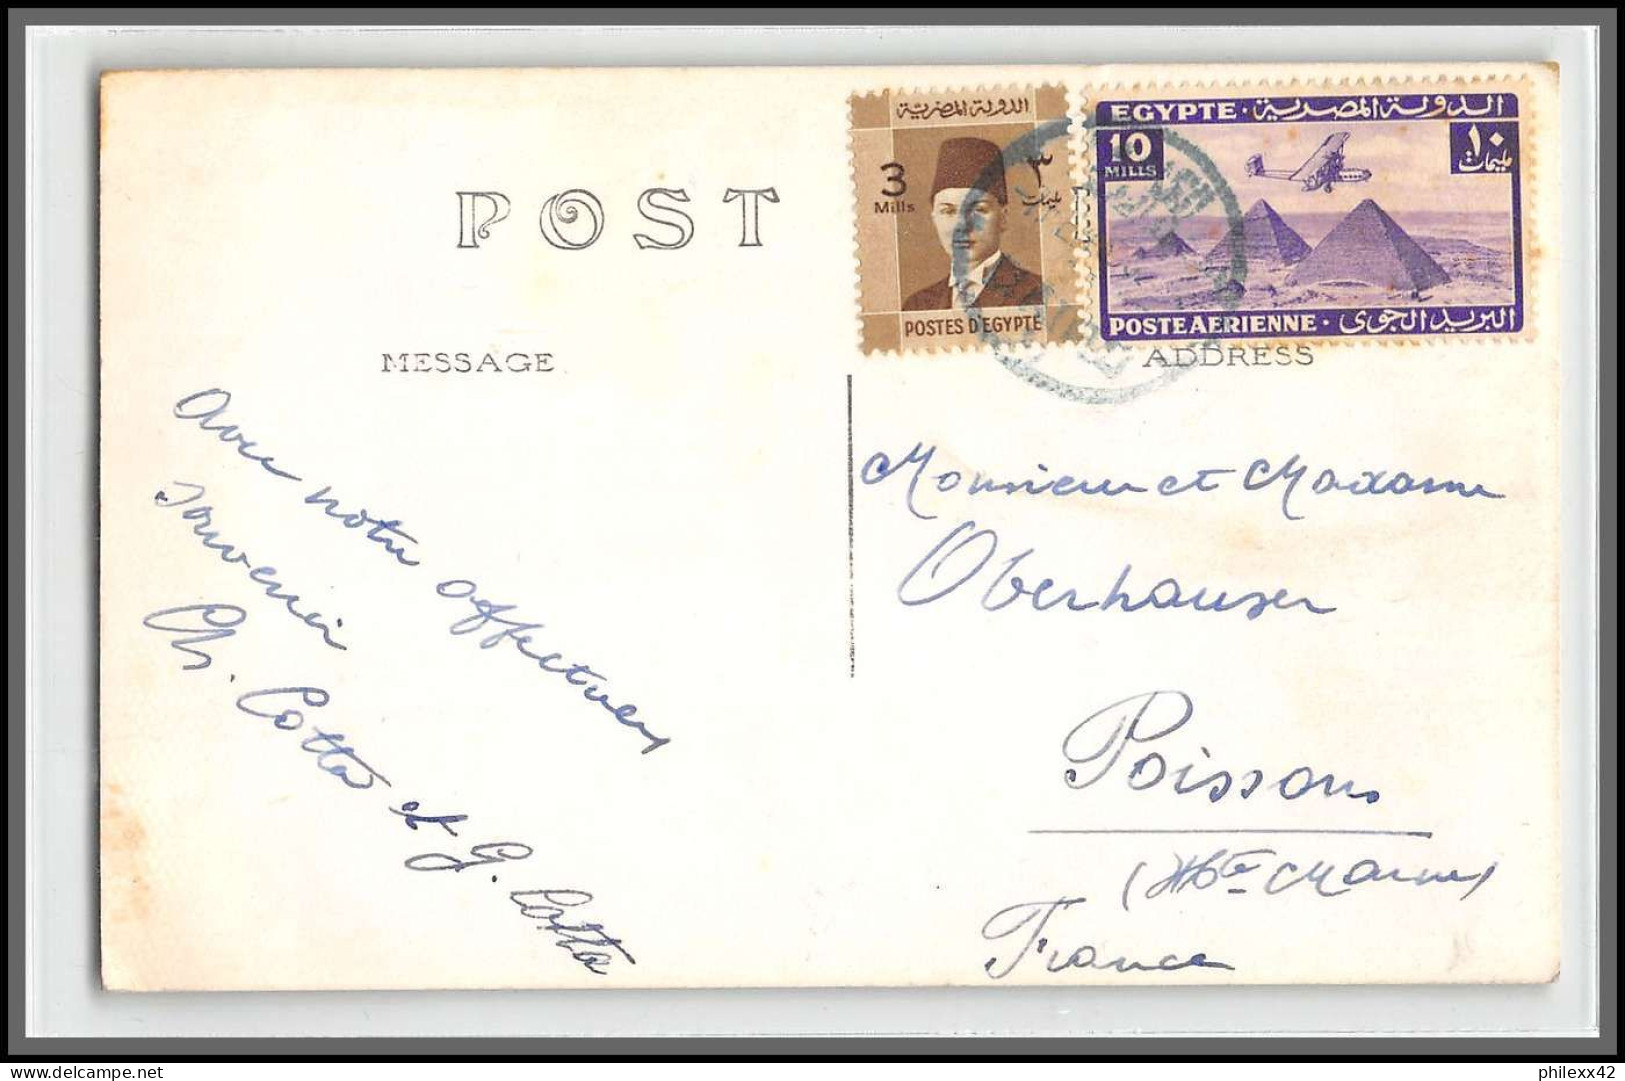 11959 lot de 5 documents affranchissement roi fouad 1930's lettre cover egypte egypt 